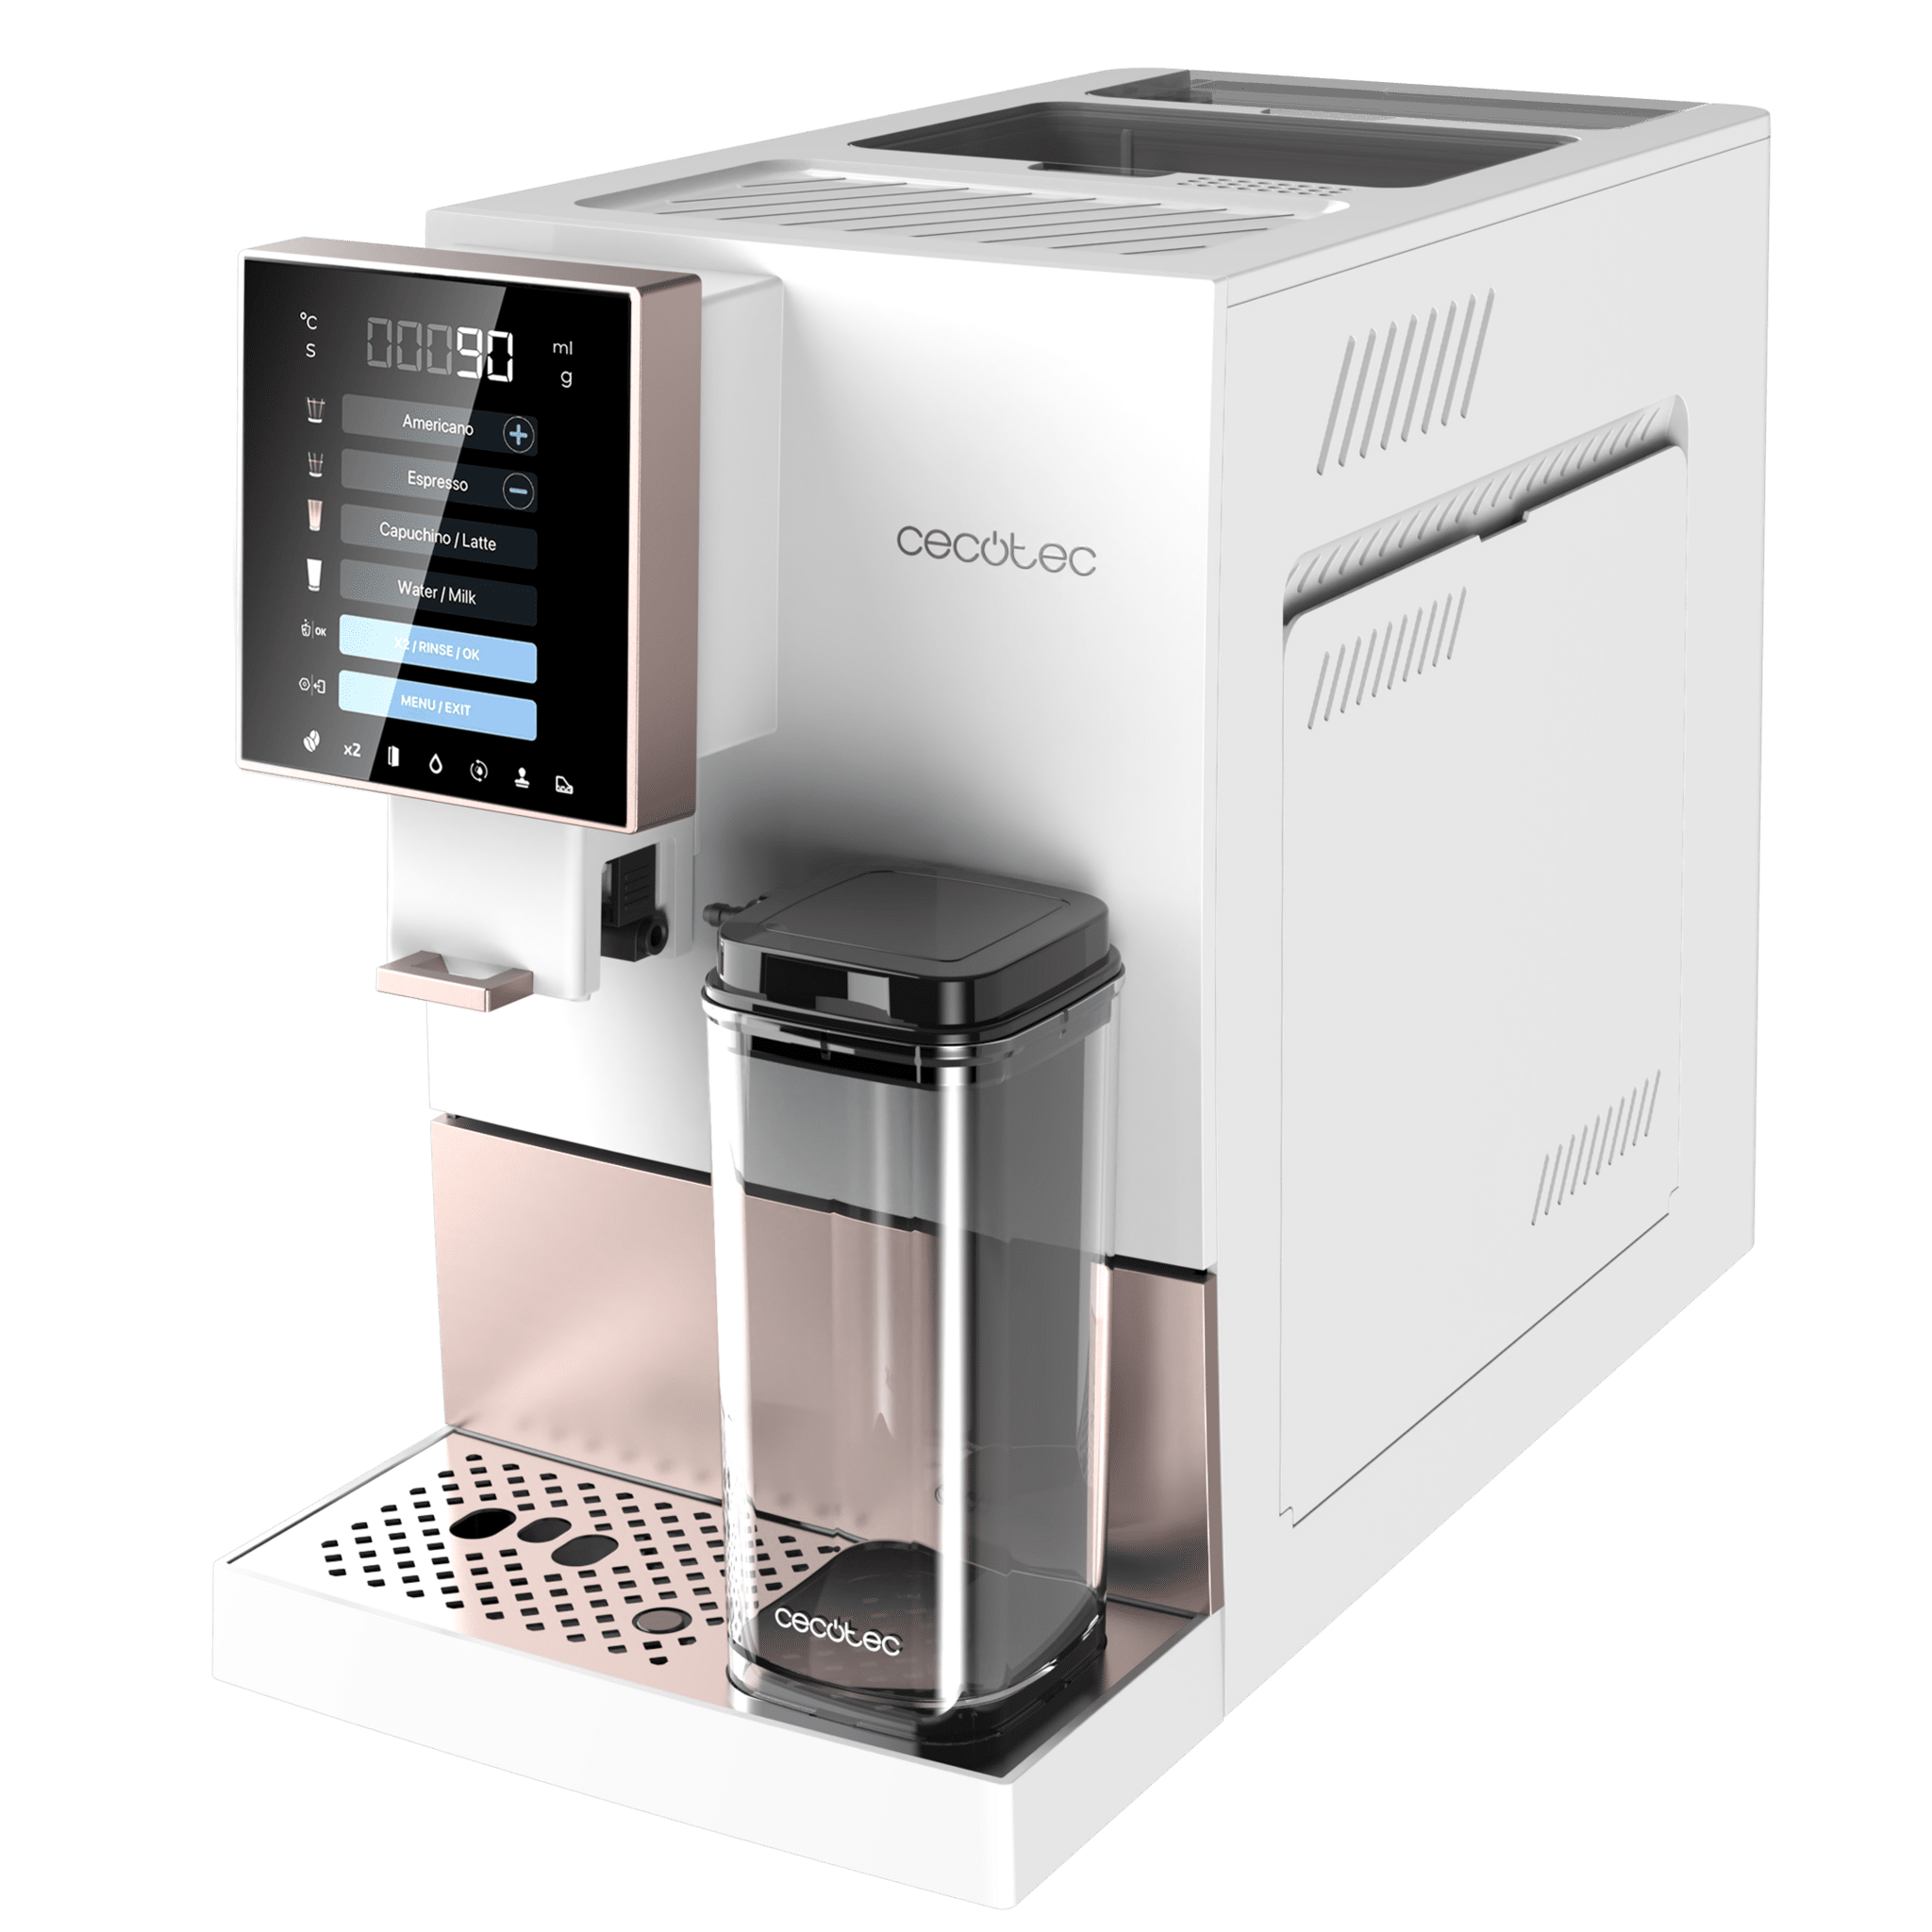 Macchina da caffè Power Matic-ccino Serie 6000 Nera Cecotec — Rehabilitaweb